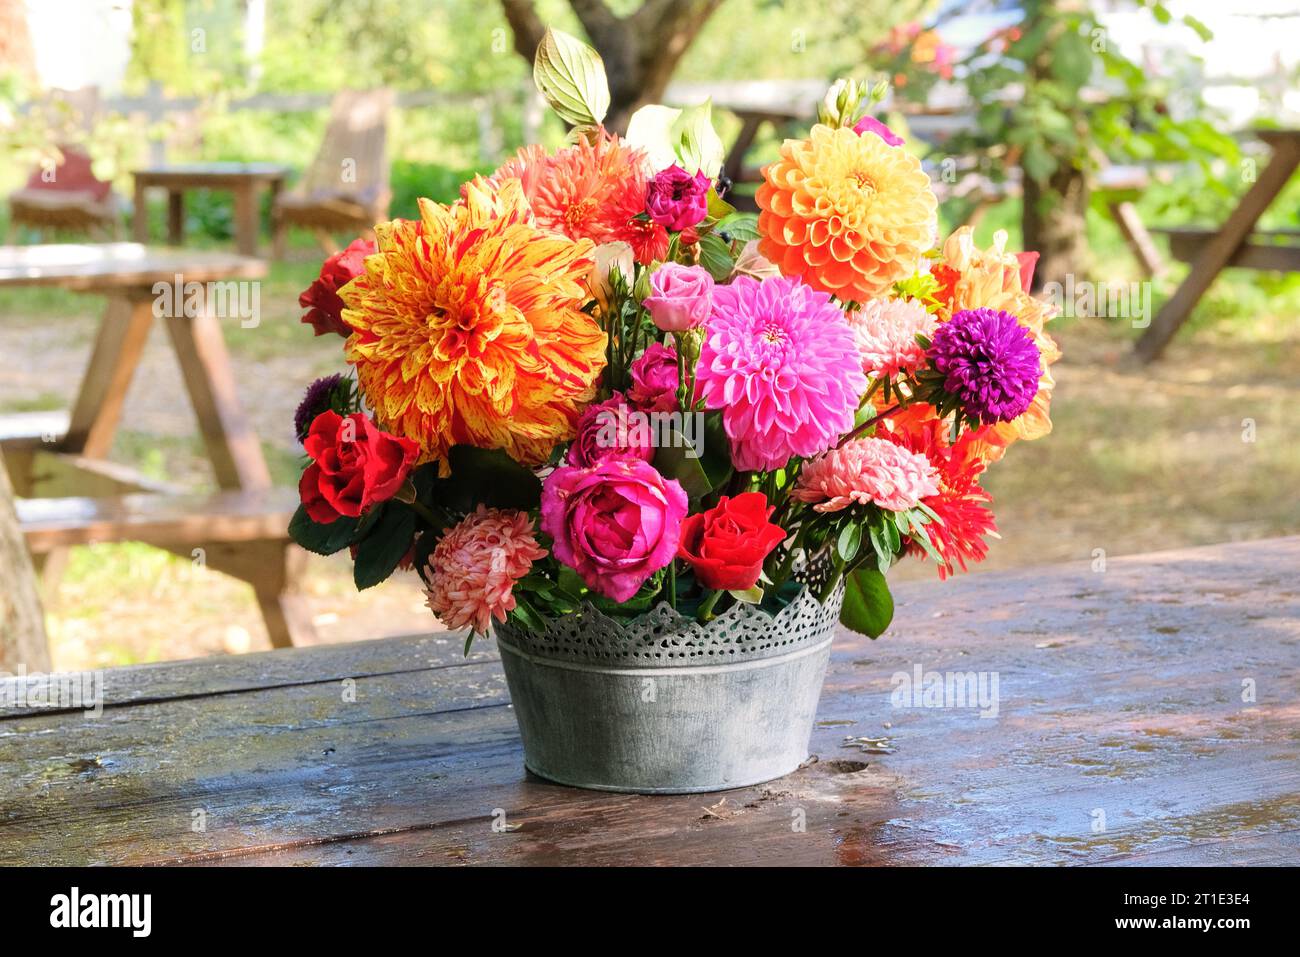 Rosen, Astern, Dahlien im Apfelgarten auf einem Holztisch. Floristisches Design. Blumen an sonnigem Tag. Landleben. Stockfoto